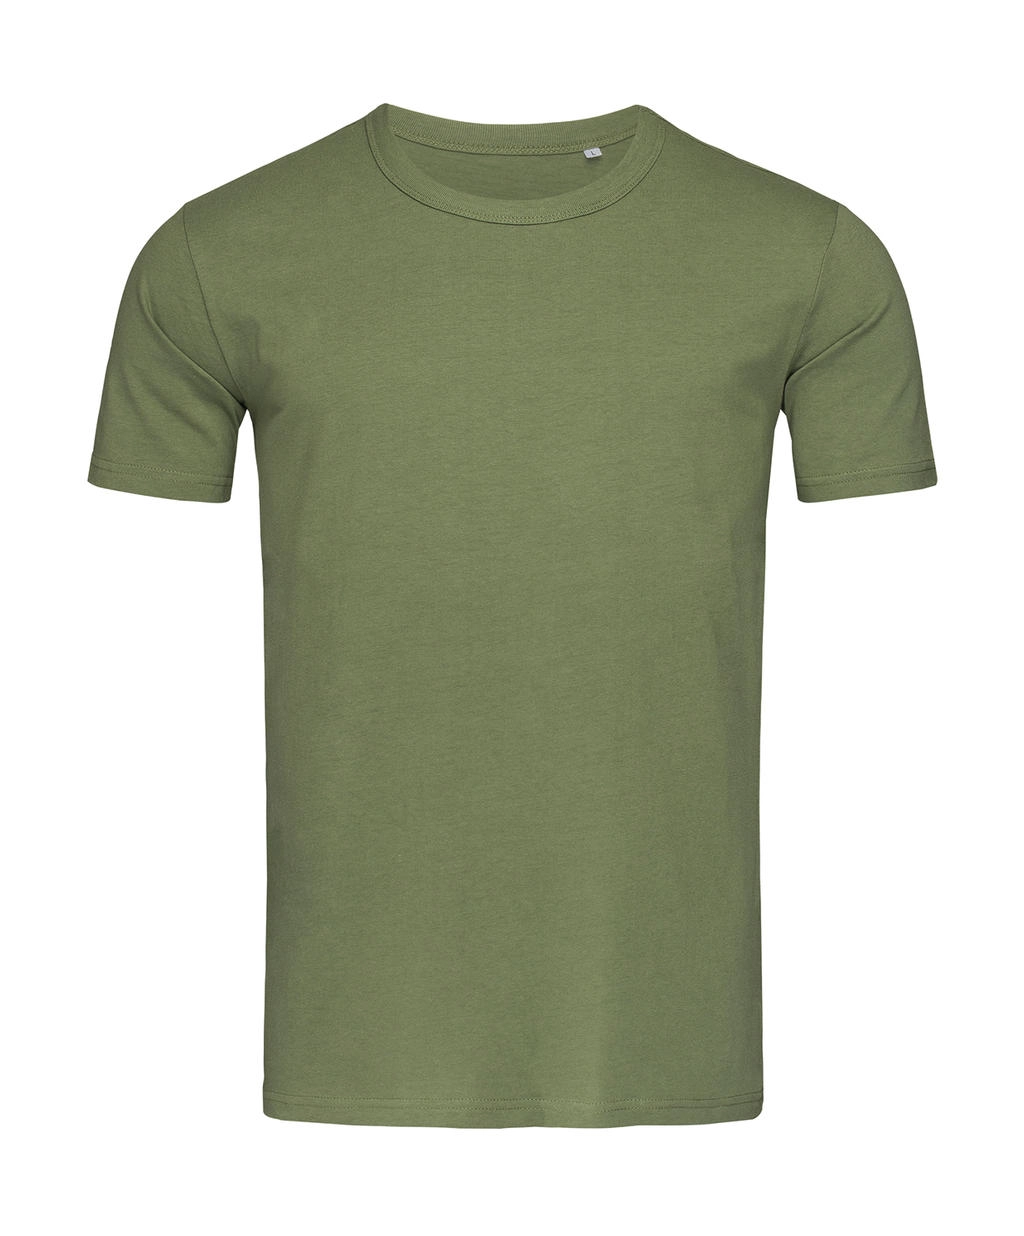 Morgan Crew Neck  zum Besticken und Bedrucken in der Farbe Military Green mit Ihren Logo, Schriftzug oder Motiv.